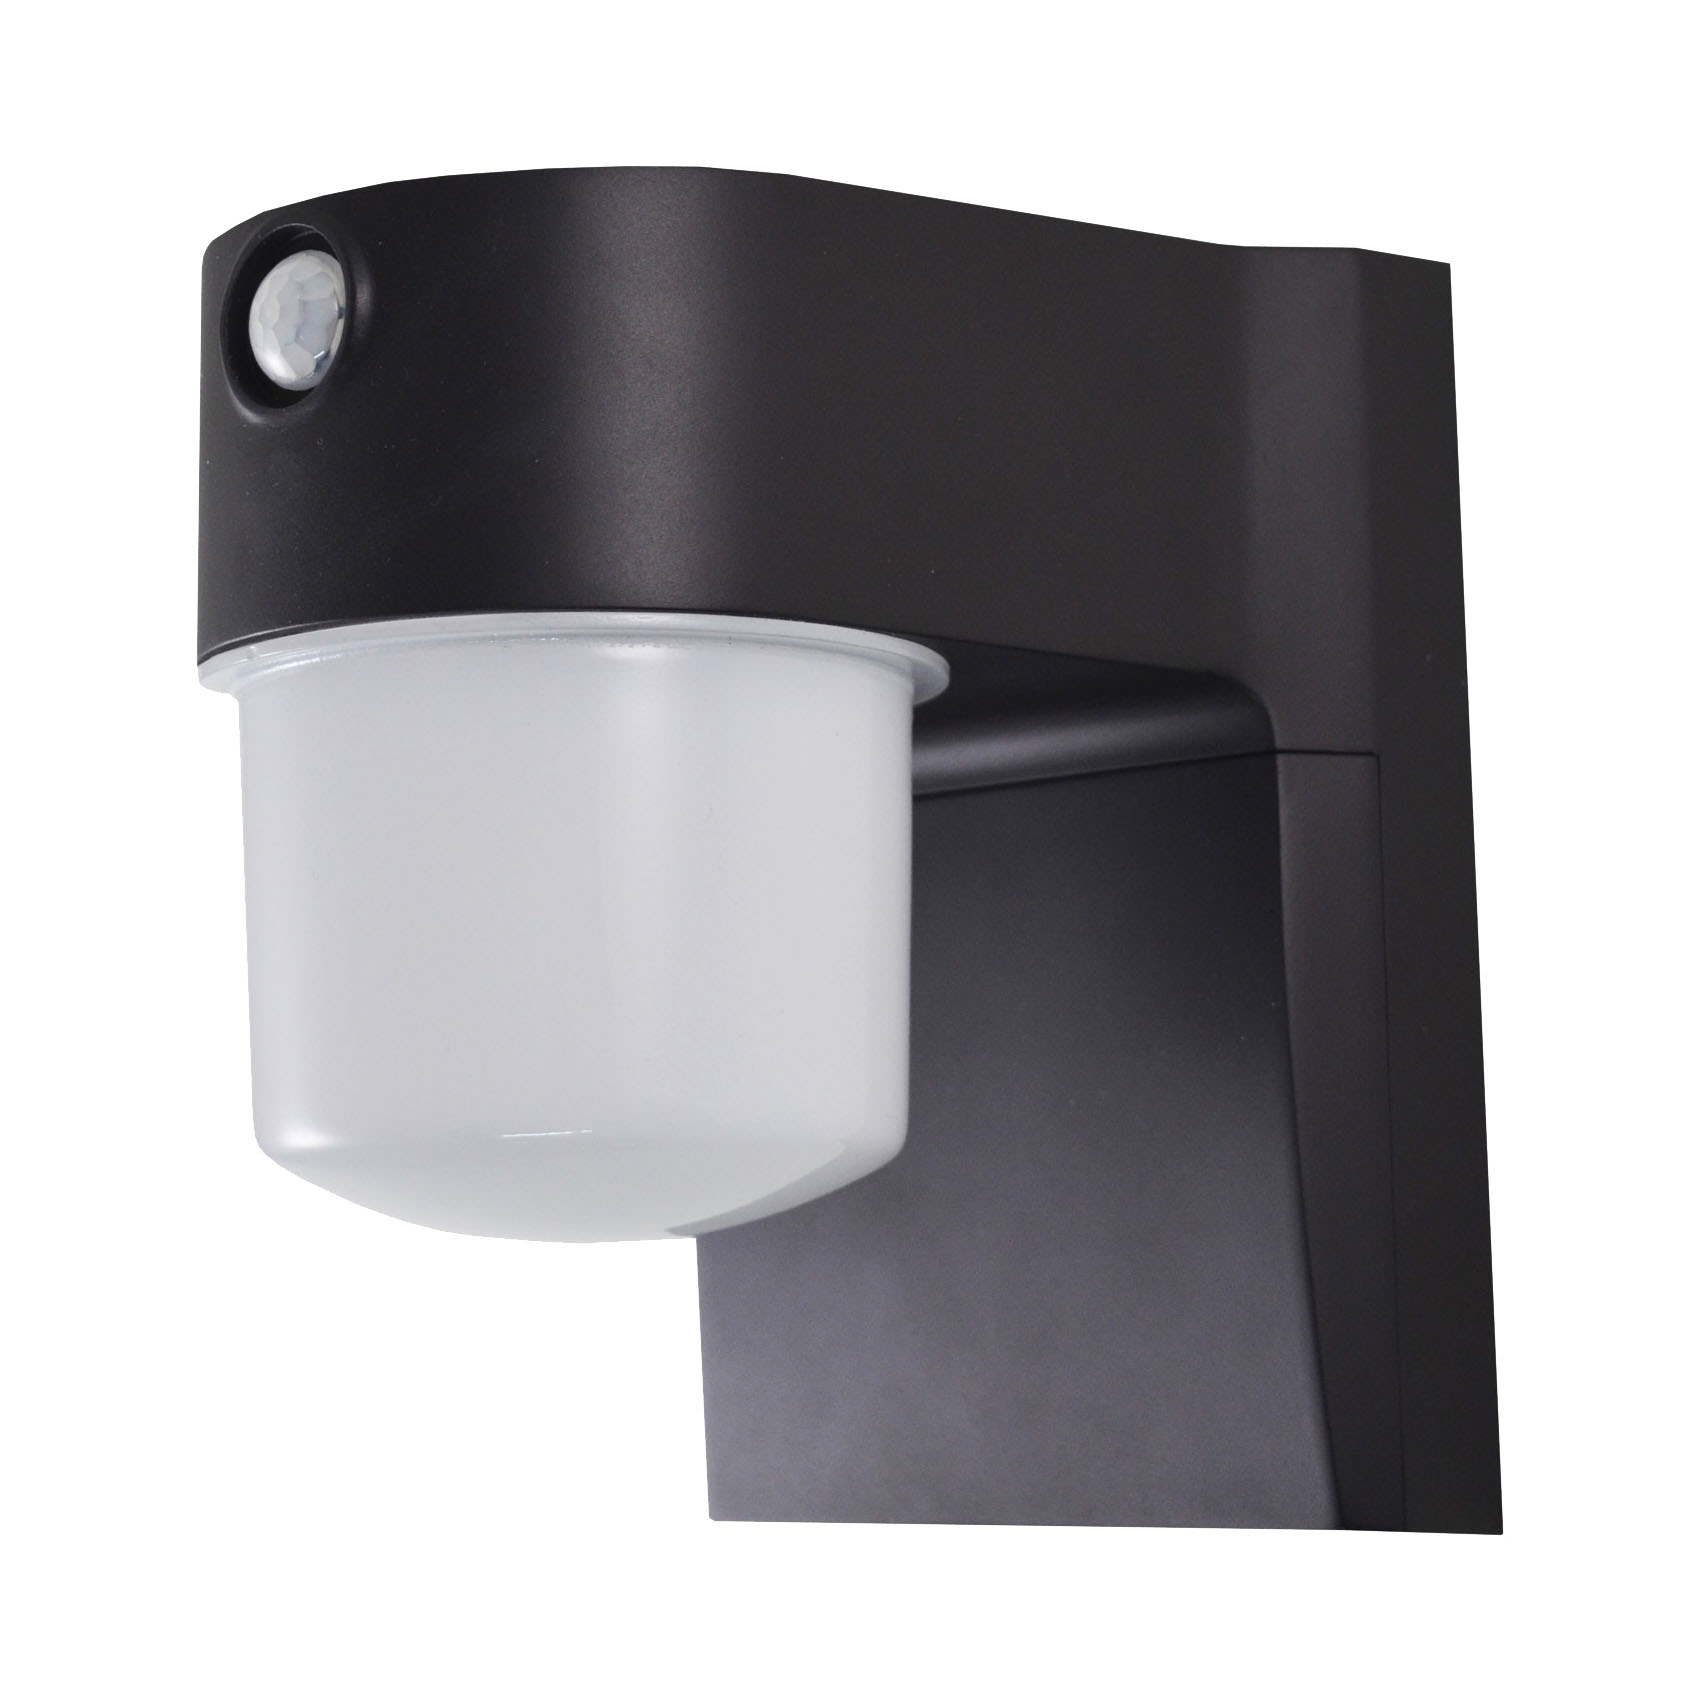 O-JJ-700-MB Security Light, 120 V, 9 W, 1-Lamp, LED Lamp, Bright White Light, 700 Lumens, 4000 K Color Temp